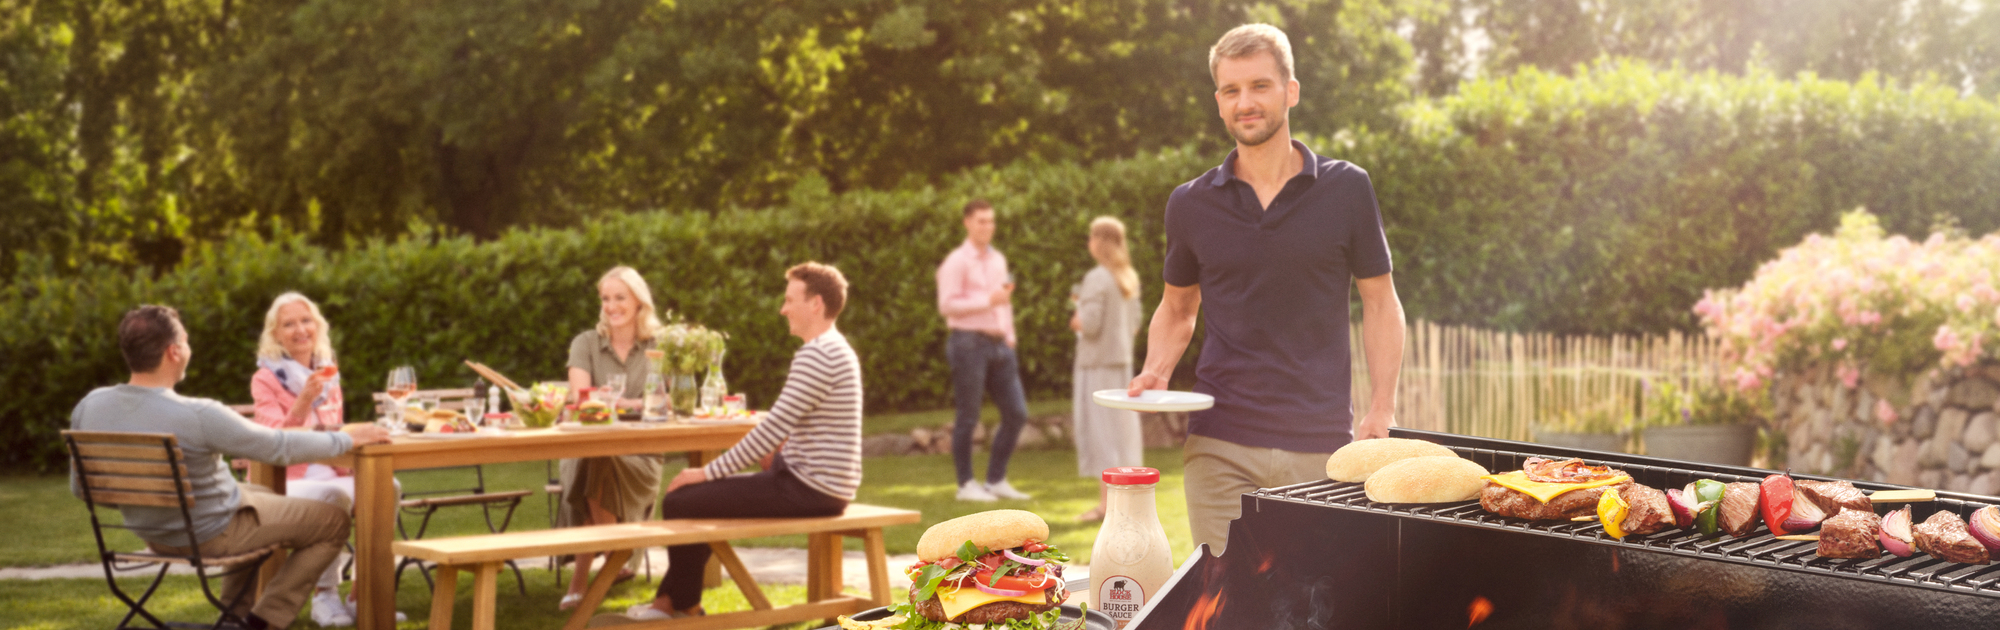 Im Vordergrund ein Grill mit BLOCK HOUSE Burgern und Sauce; links sitzen mehrere Personen an einem Tisch, im Hintergrund unterhalten sich ein Mann und eine Frau; ein weiterer Mann kommt mit seinem Teller auf den Grill zu